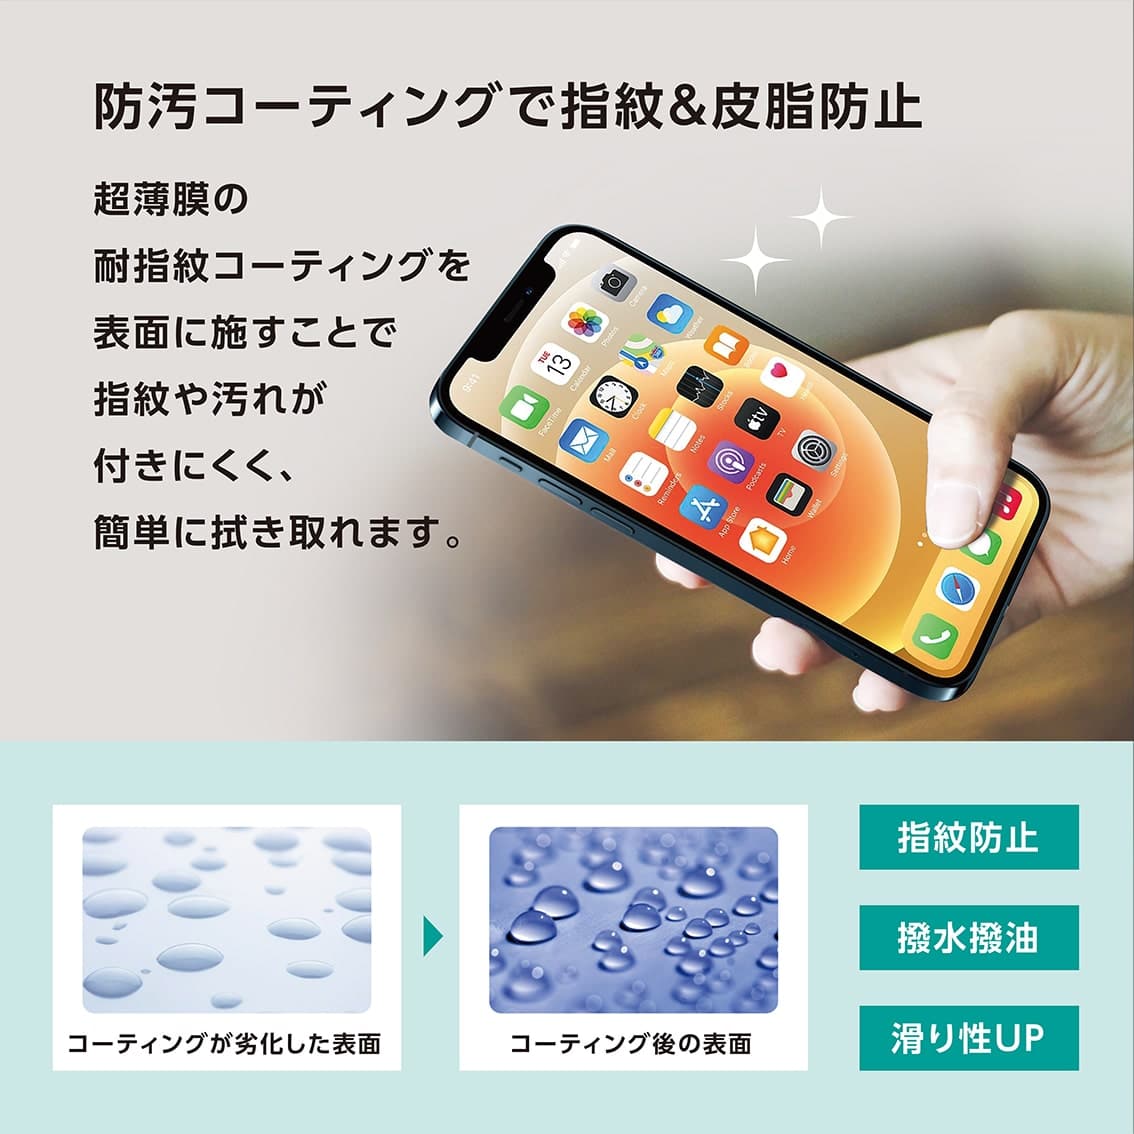 iPhone13 mini 対応 0.25mm 角割防止 PETフレーム付き ガラスフィルム クリア アンチグレアブルーライトカット ブルーライトカット 覗き見防止